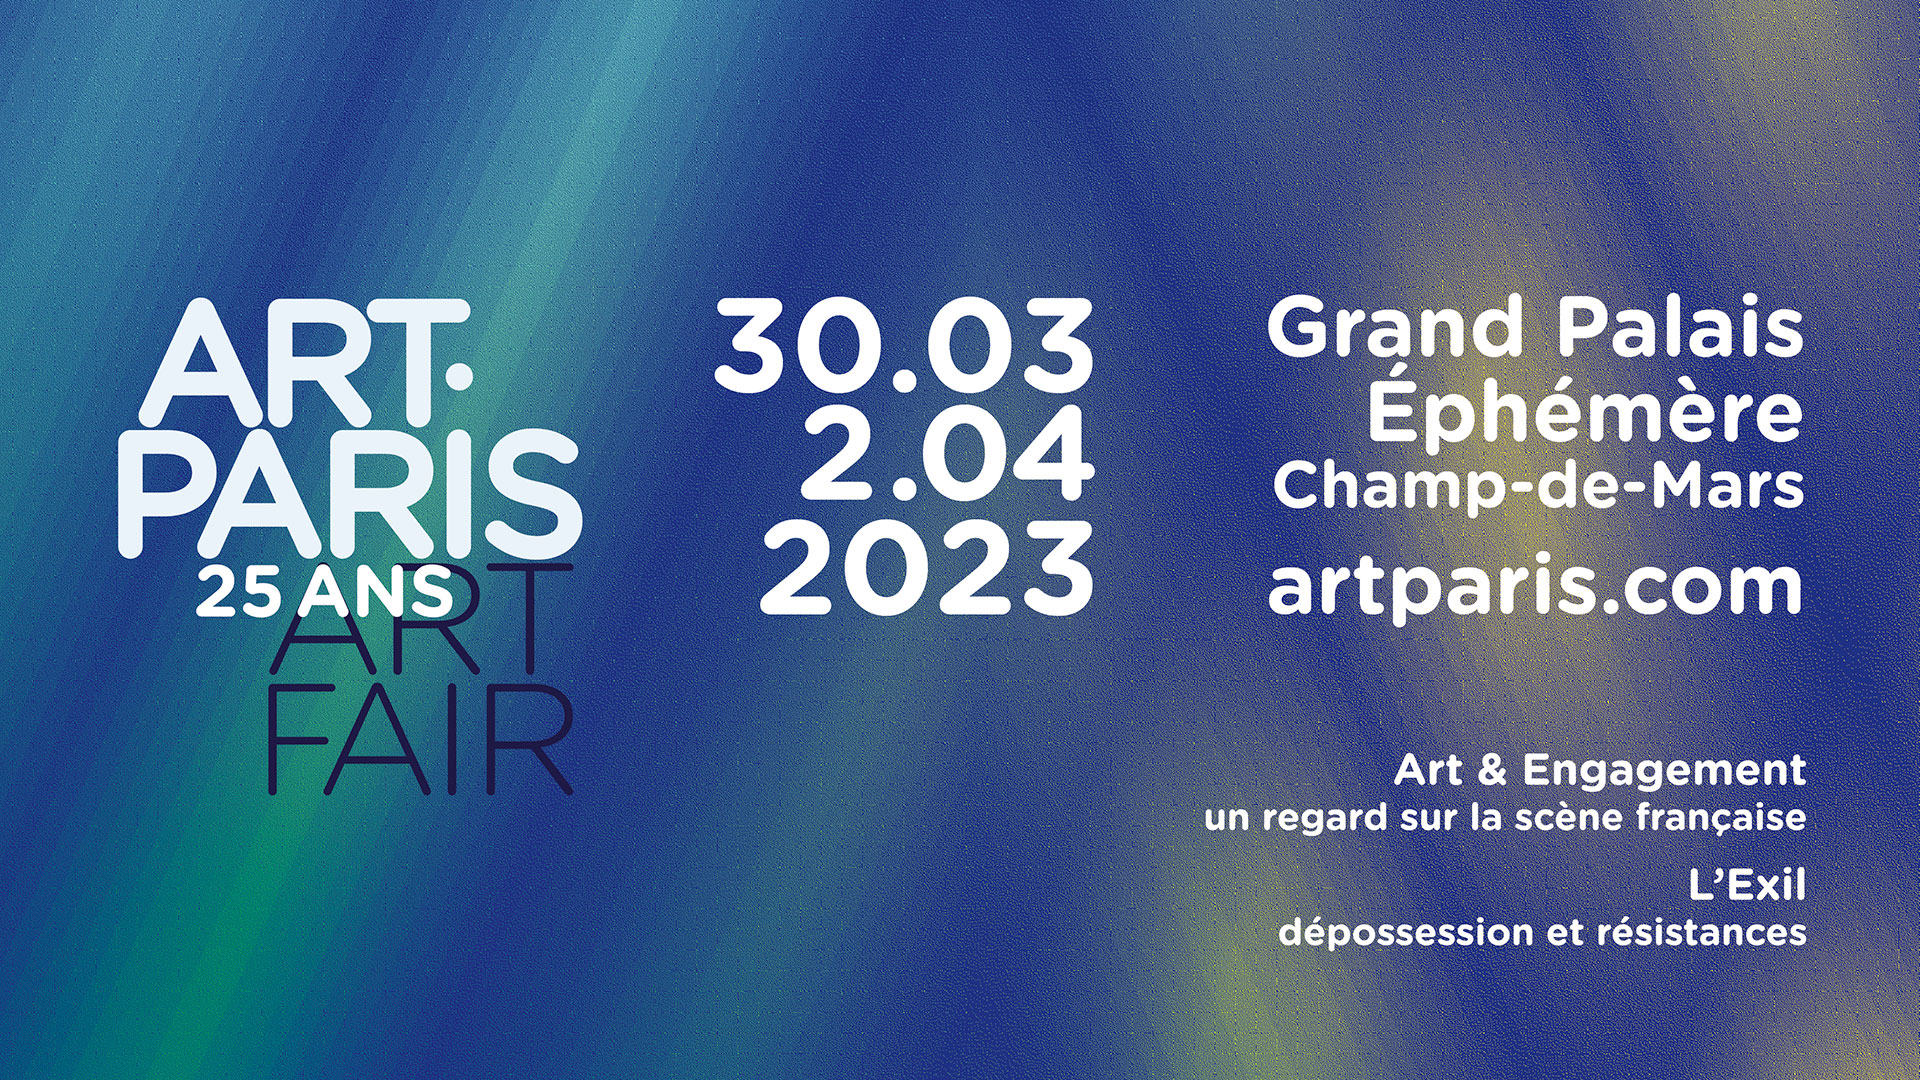 Art Paris 2023 : du 30 mars au 2 avril 2023 au Grand Palais Éphémère